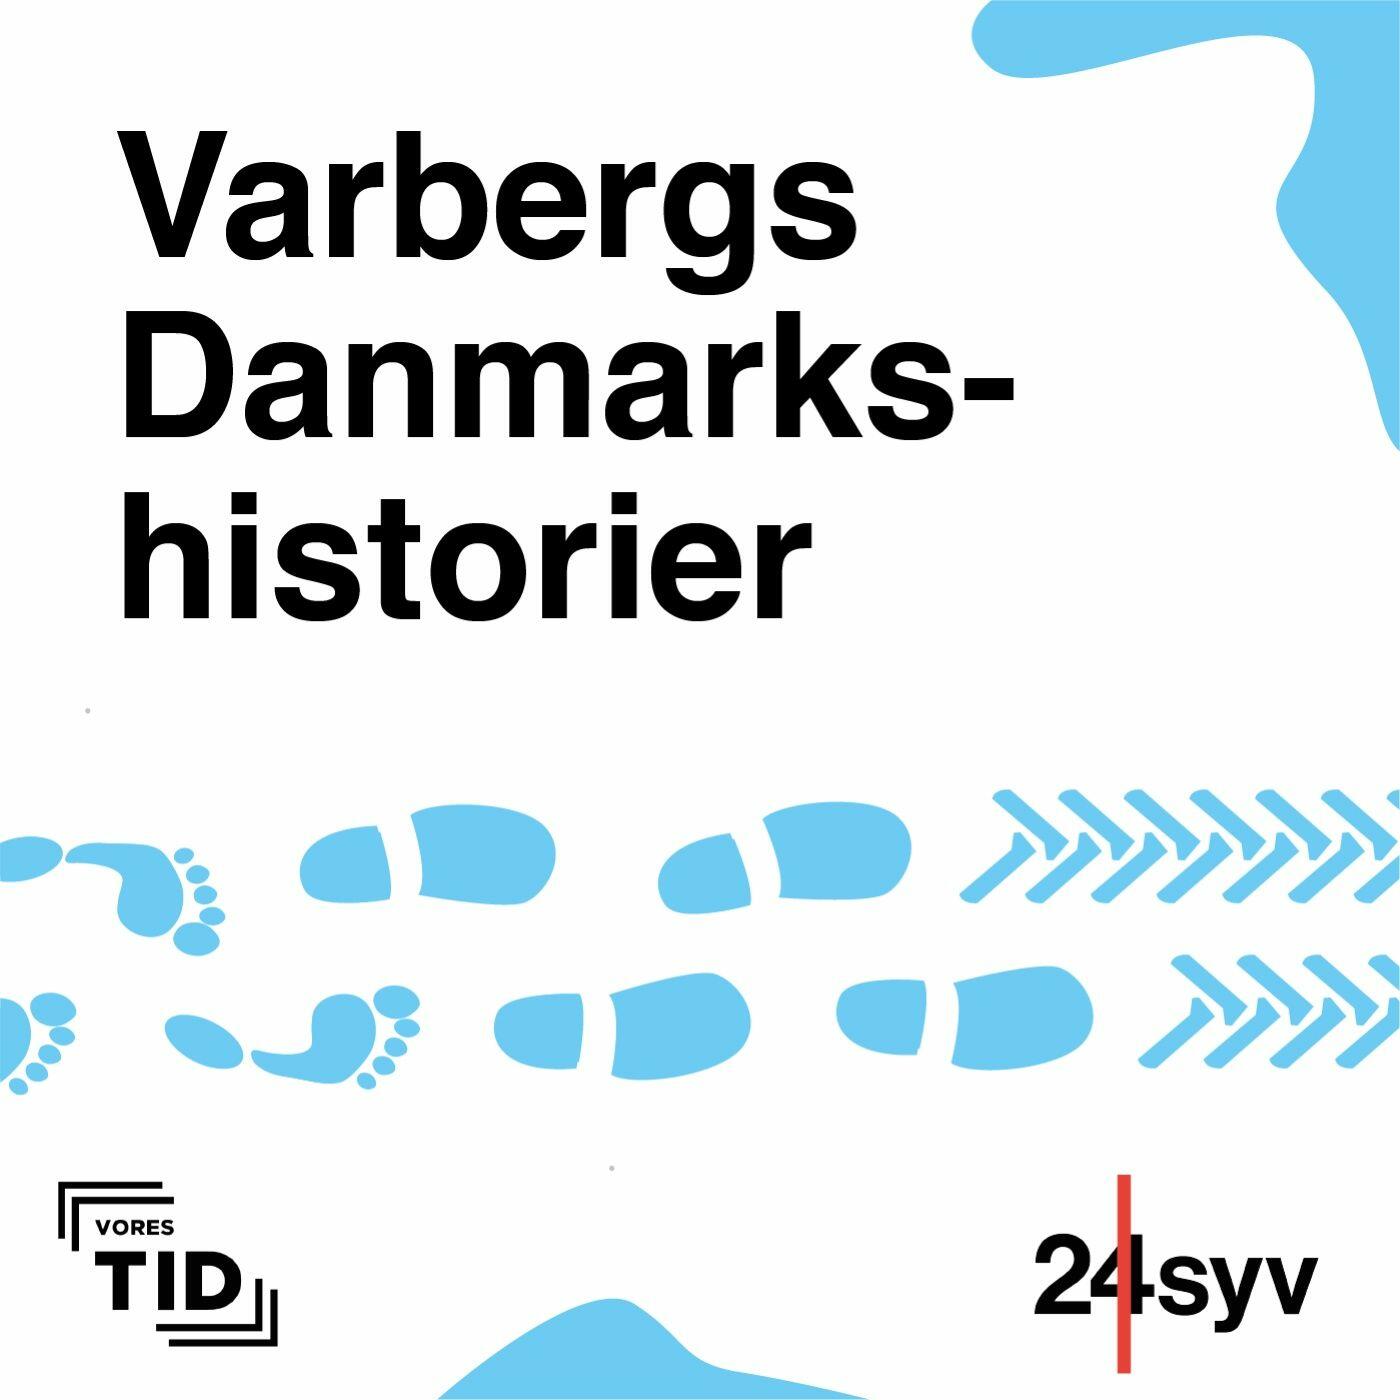 Asser Optimal Rend Varbergs Danmarkshistorier | iHeart